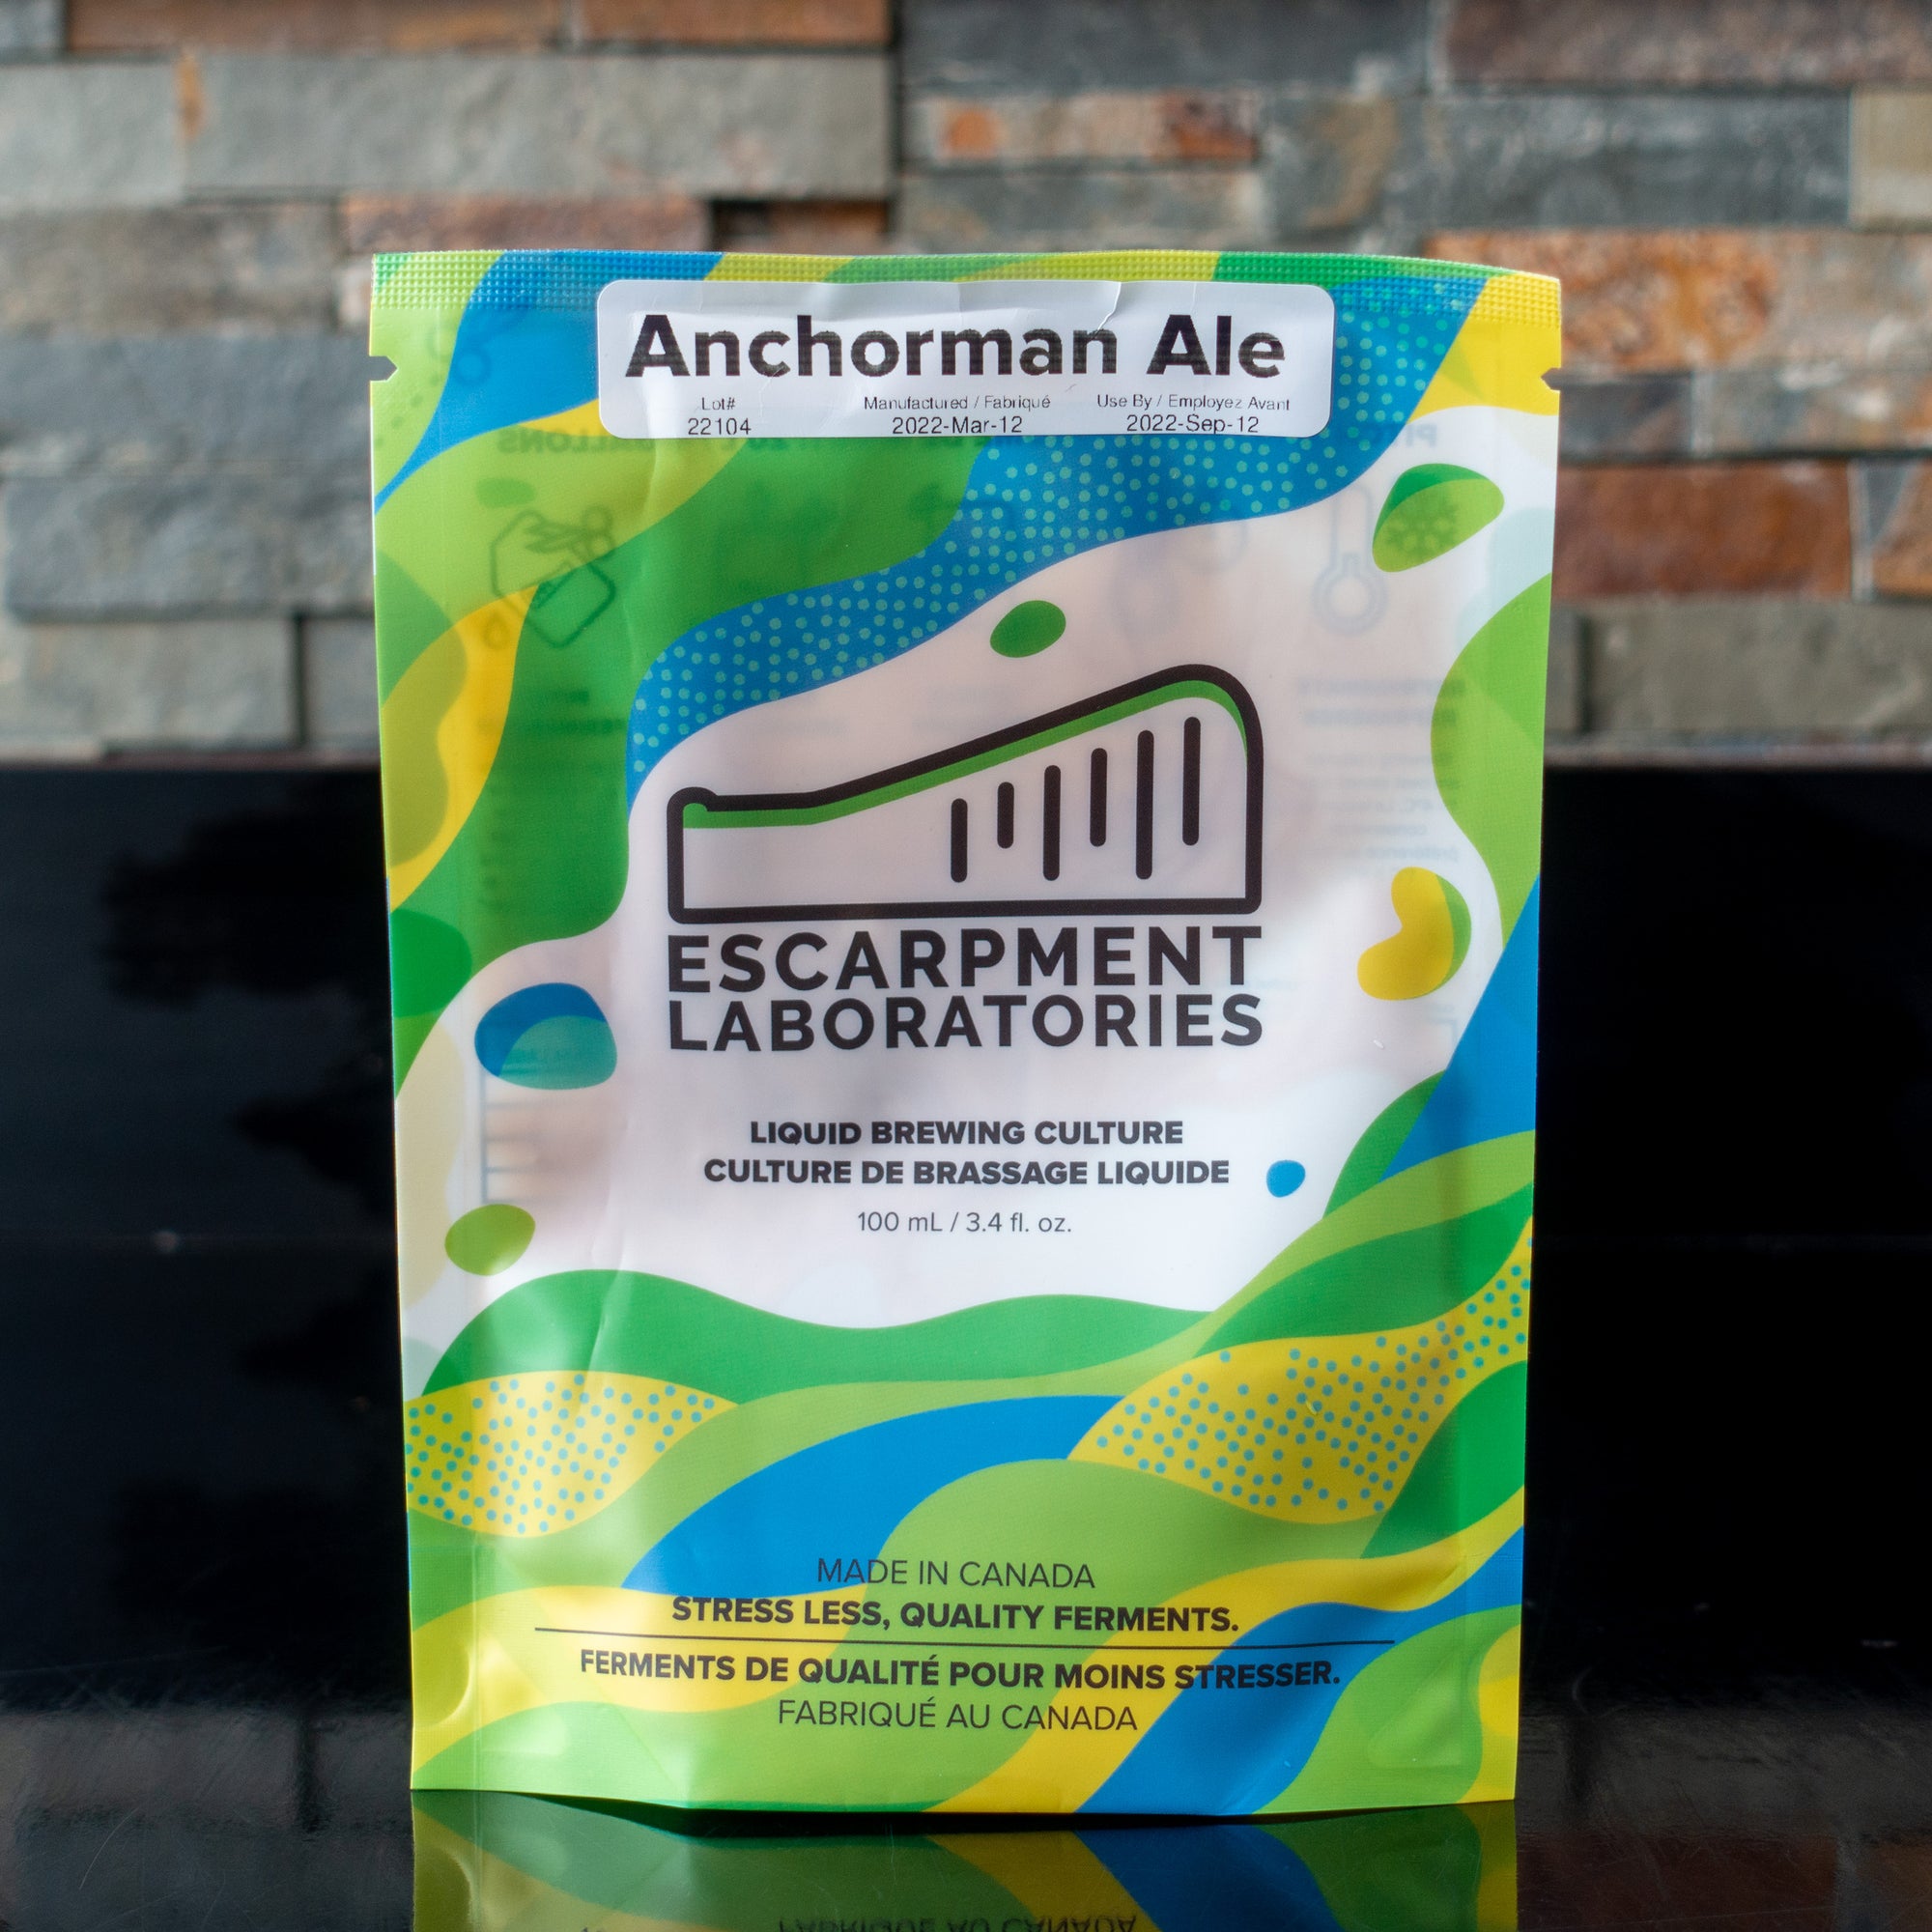 Anchorman Ale - Escarpment Labs